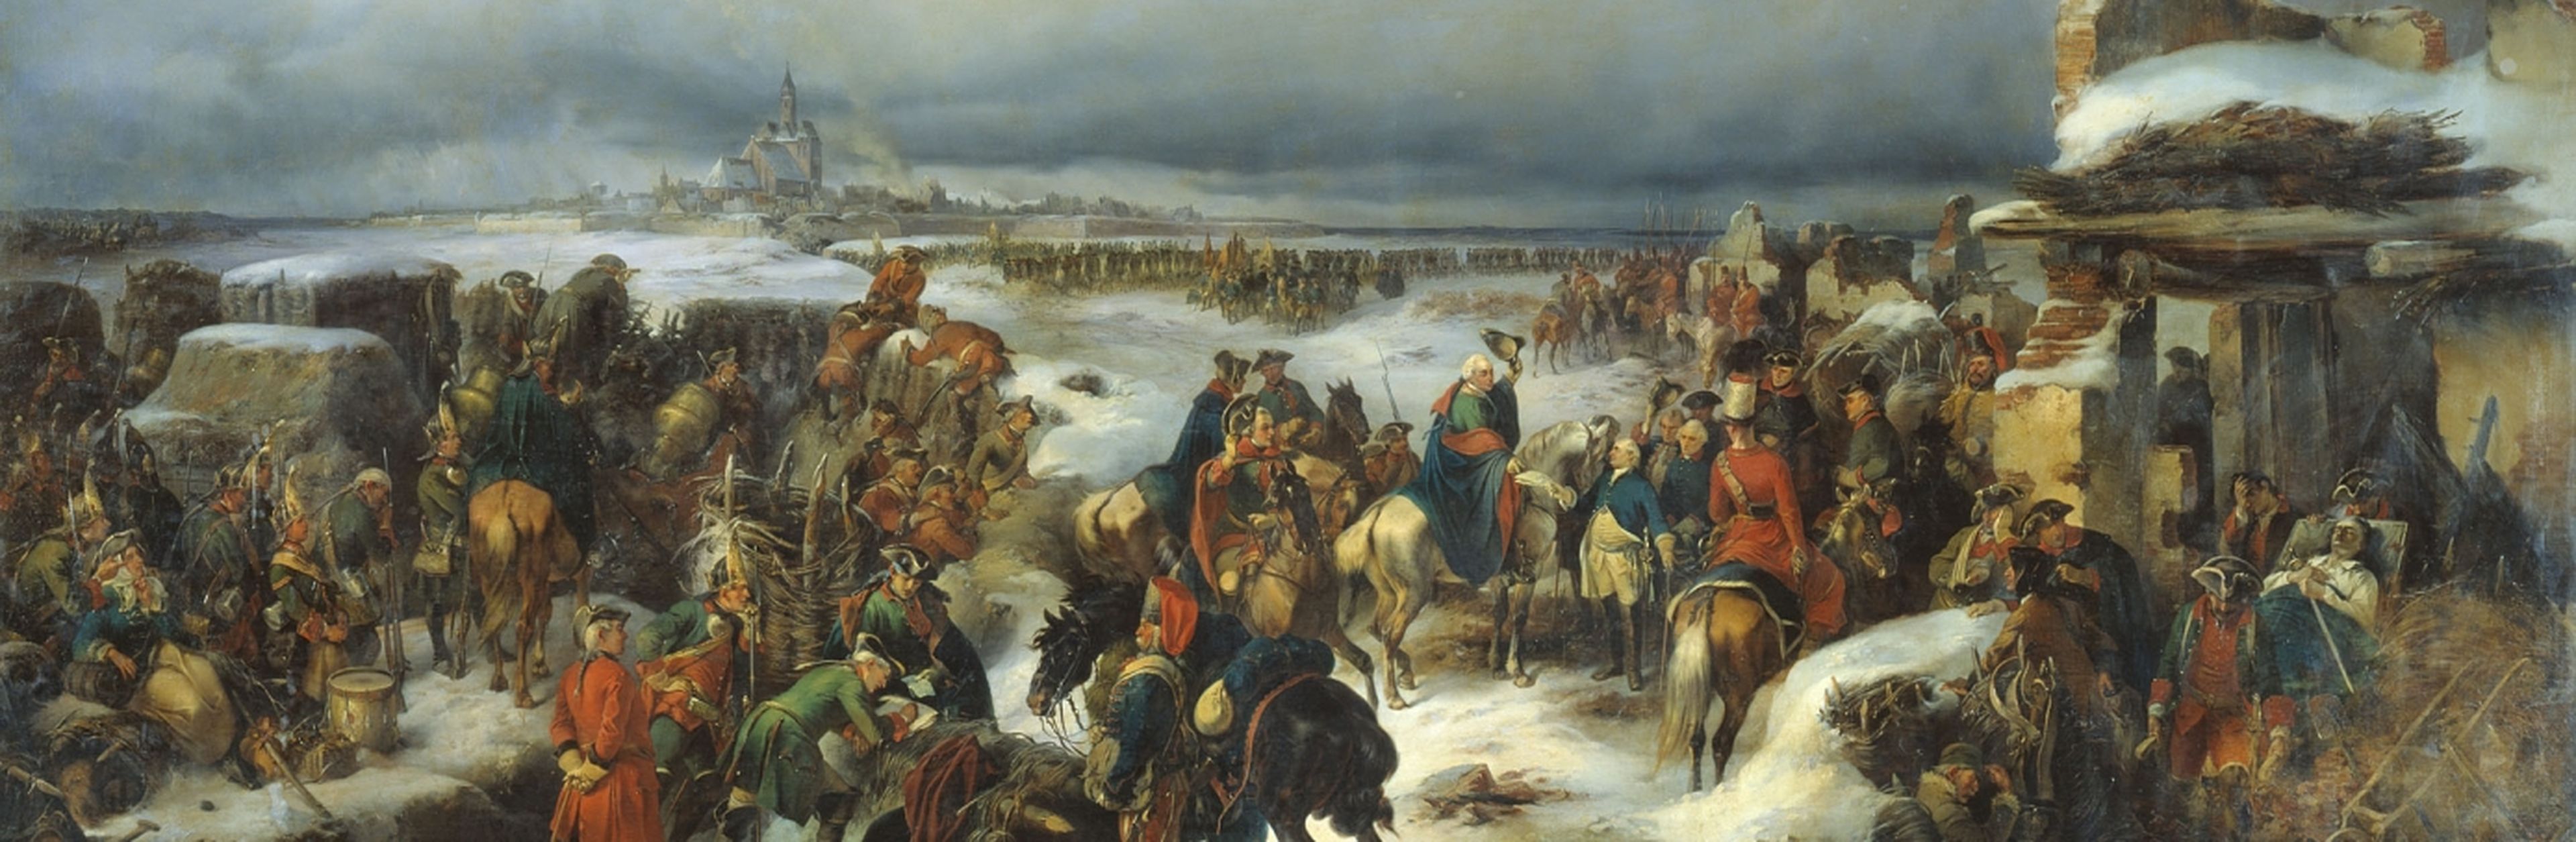 Взятие кольберга. Осада Кольберга 1761. Взятие крепости Кольберг. Австрийская армия в семилетней войне.